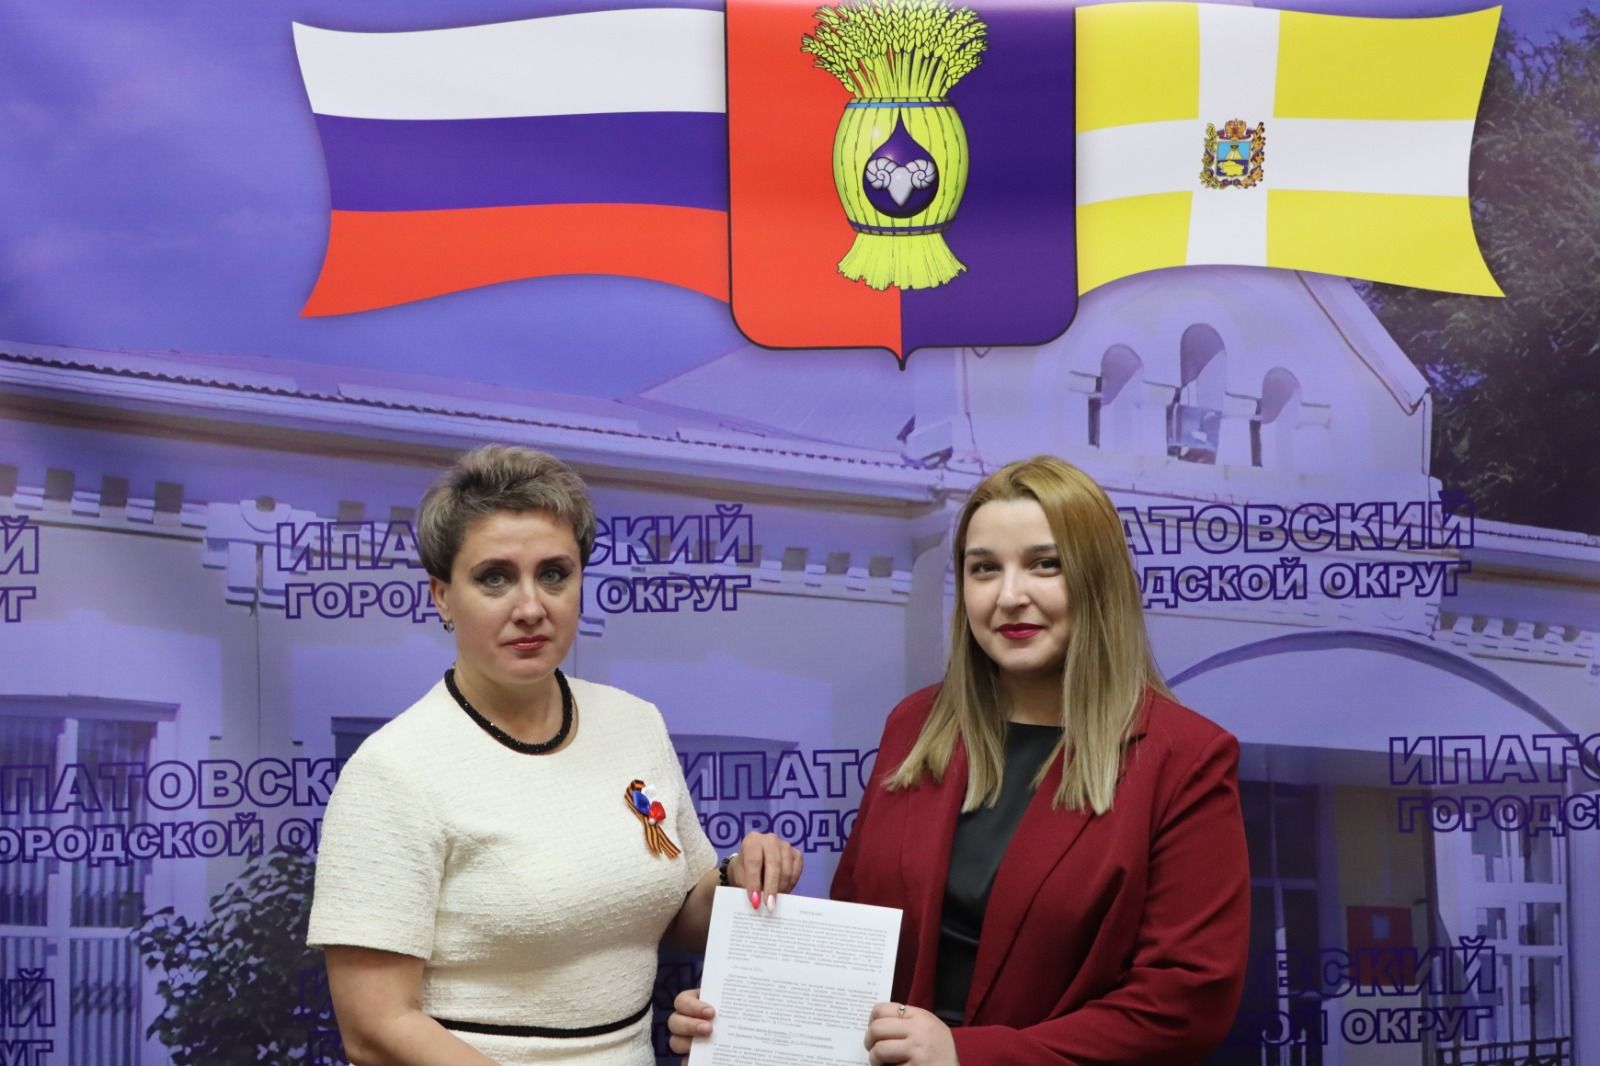 Тридцать семей Ипатовского округа получили жилищные сертификаты в этом году